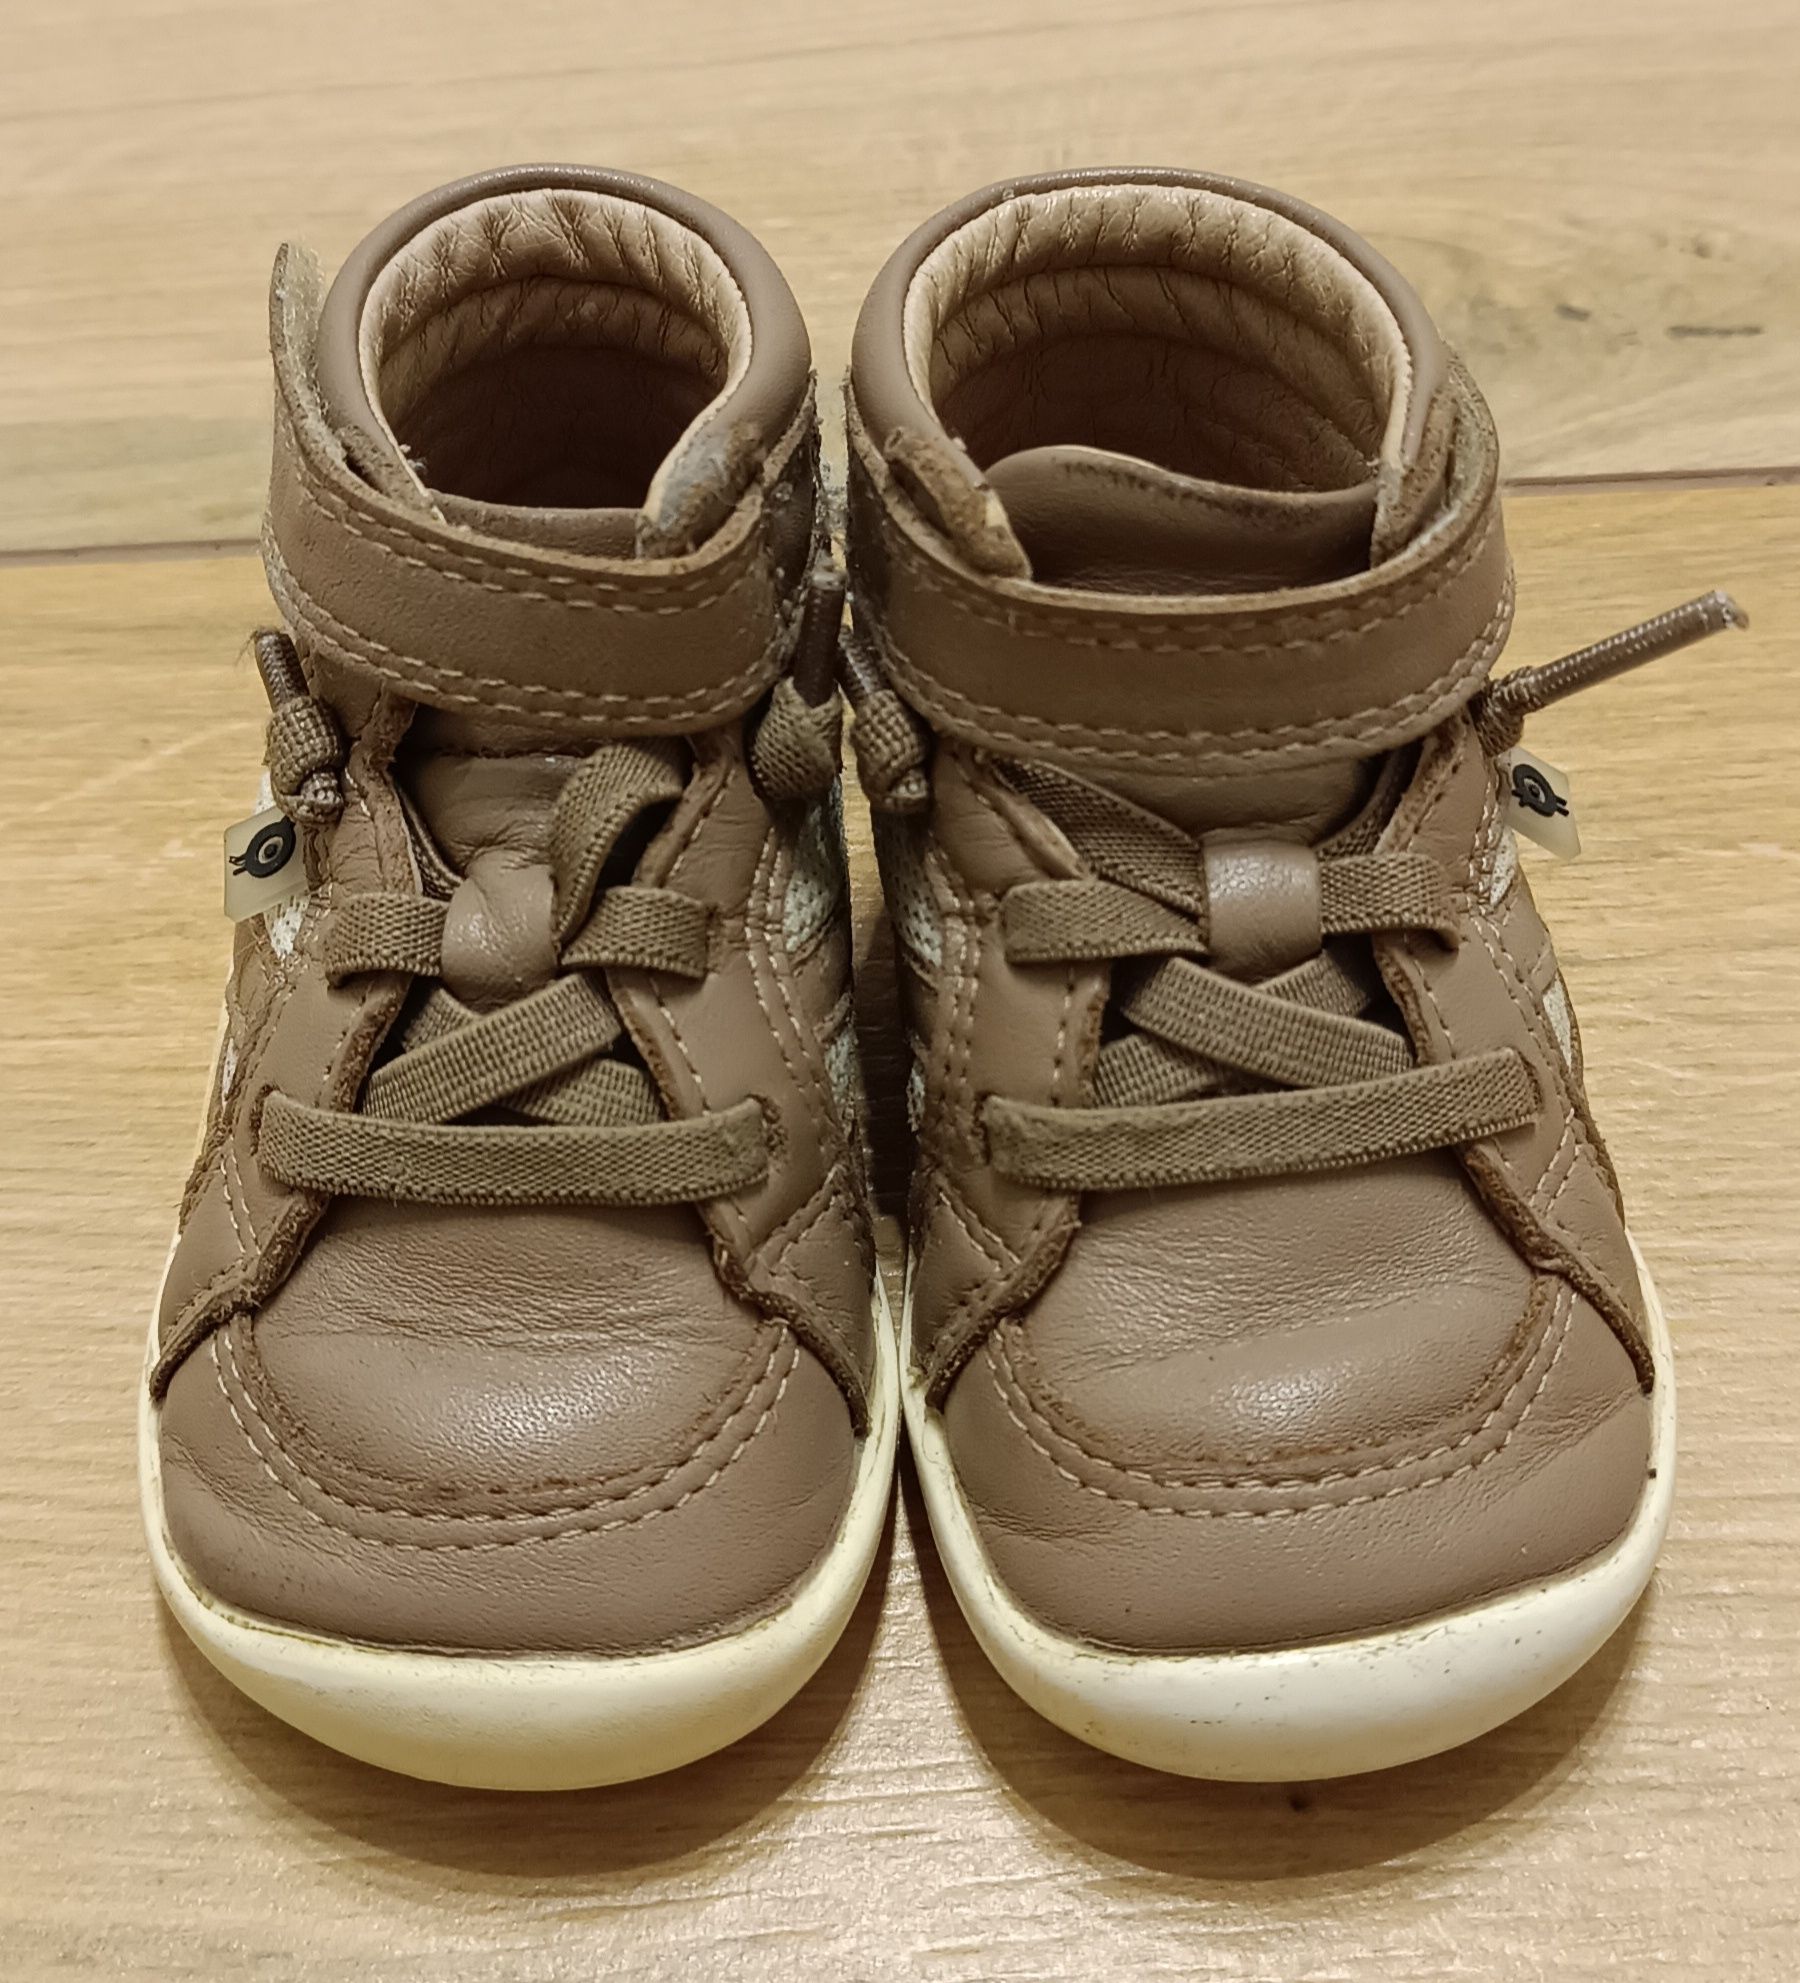 Old Soles 19 buty australijskie wiosenne dla chłopca skórzane 236 zł